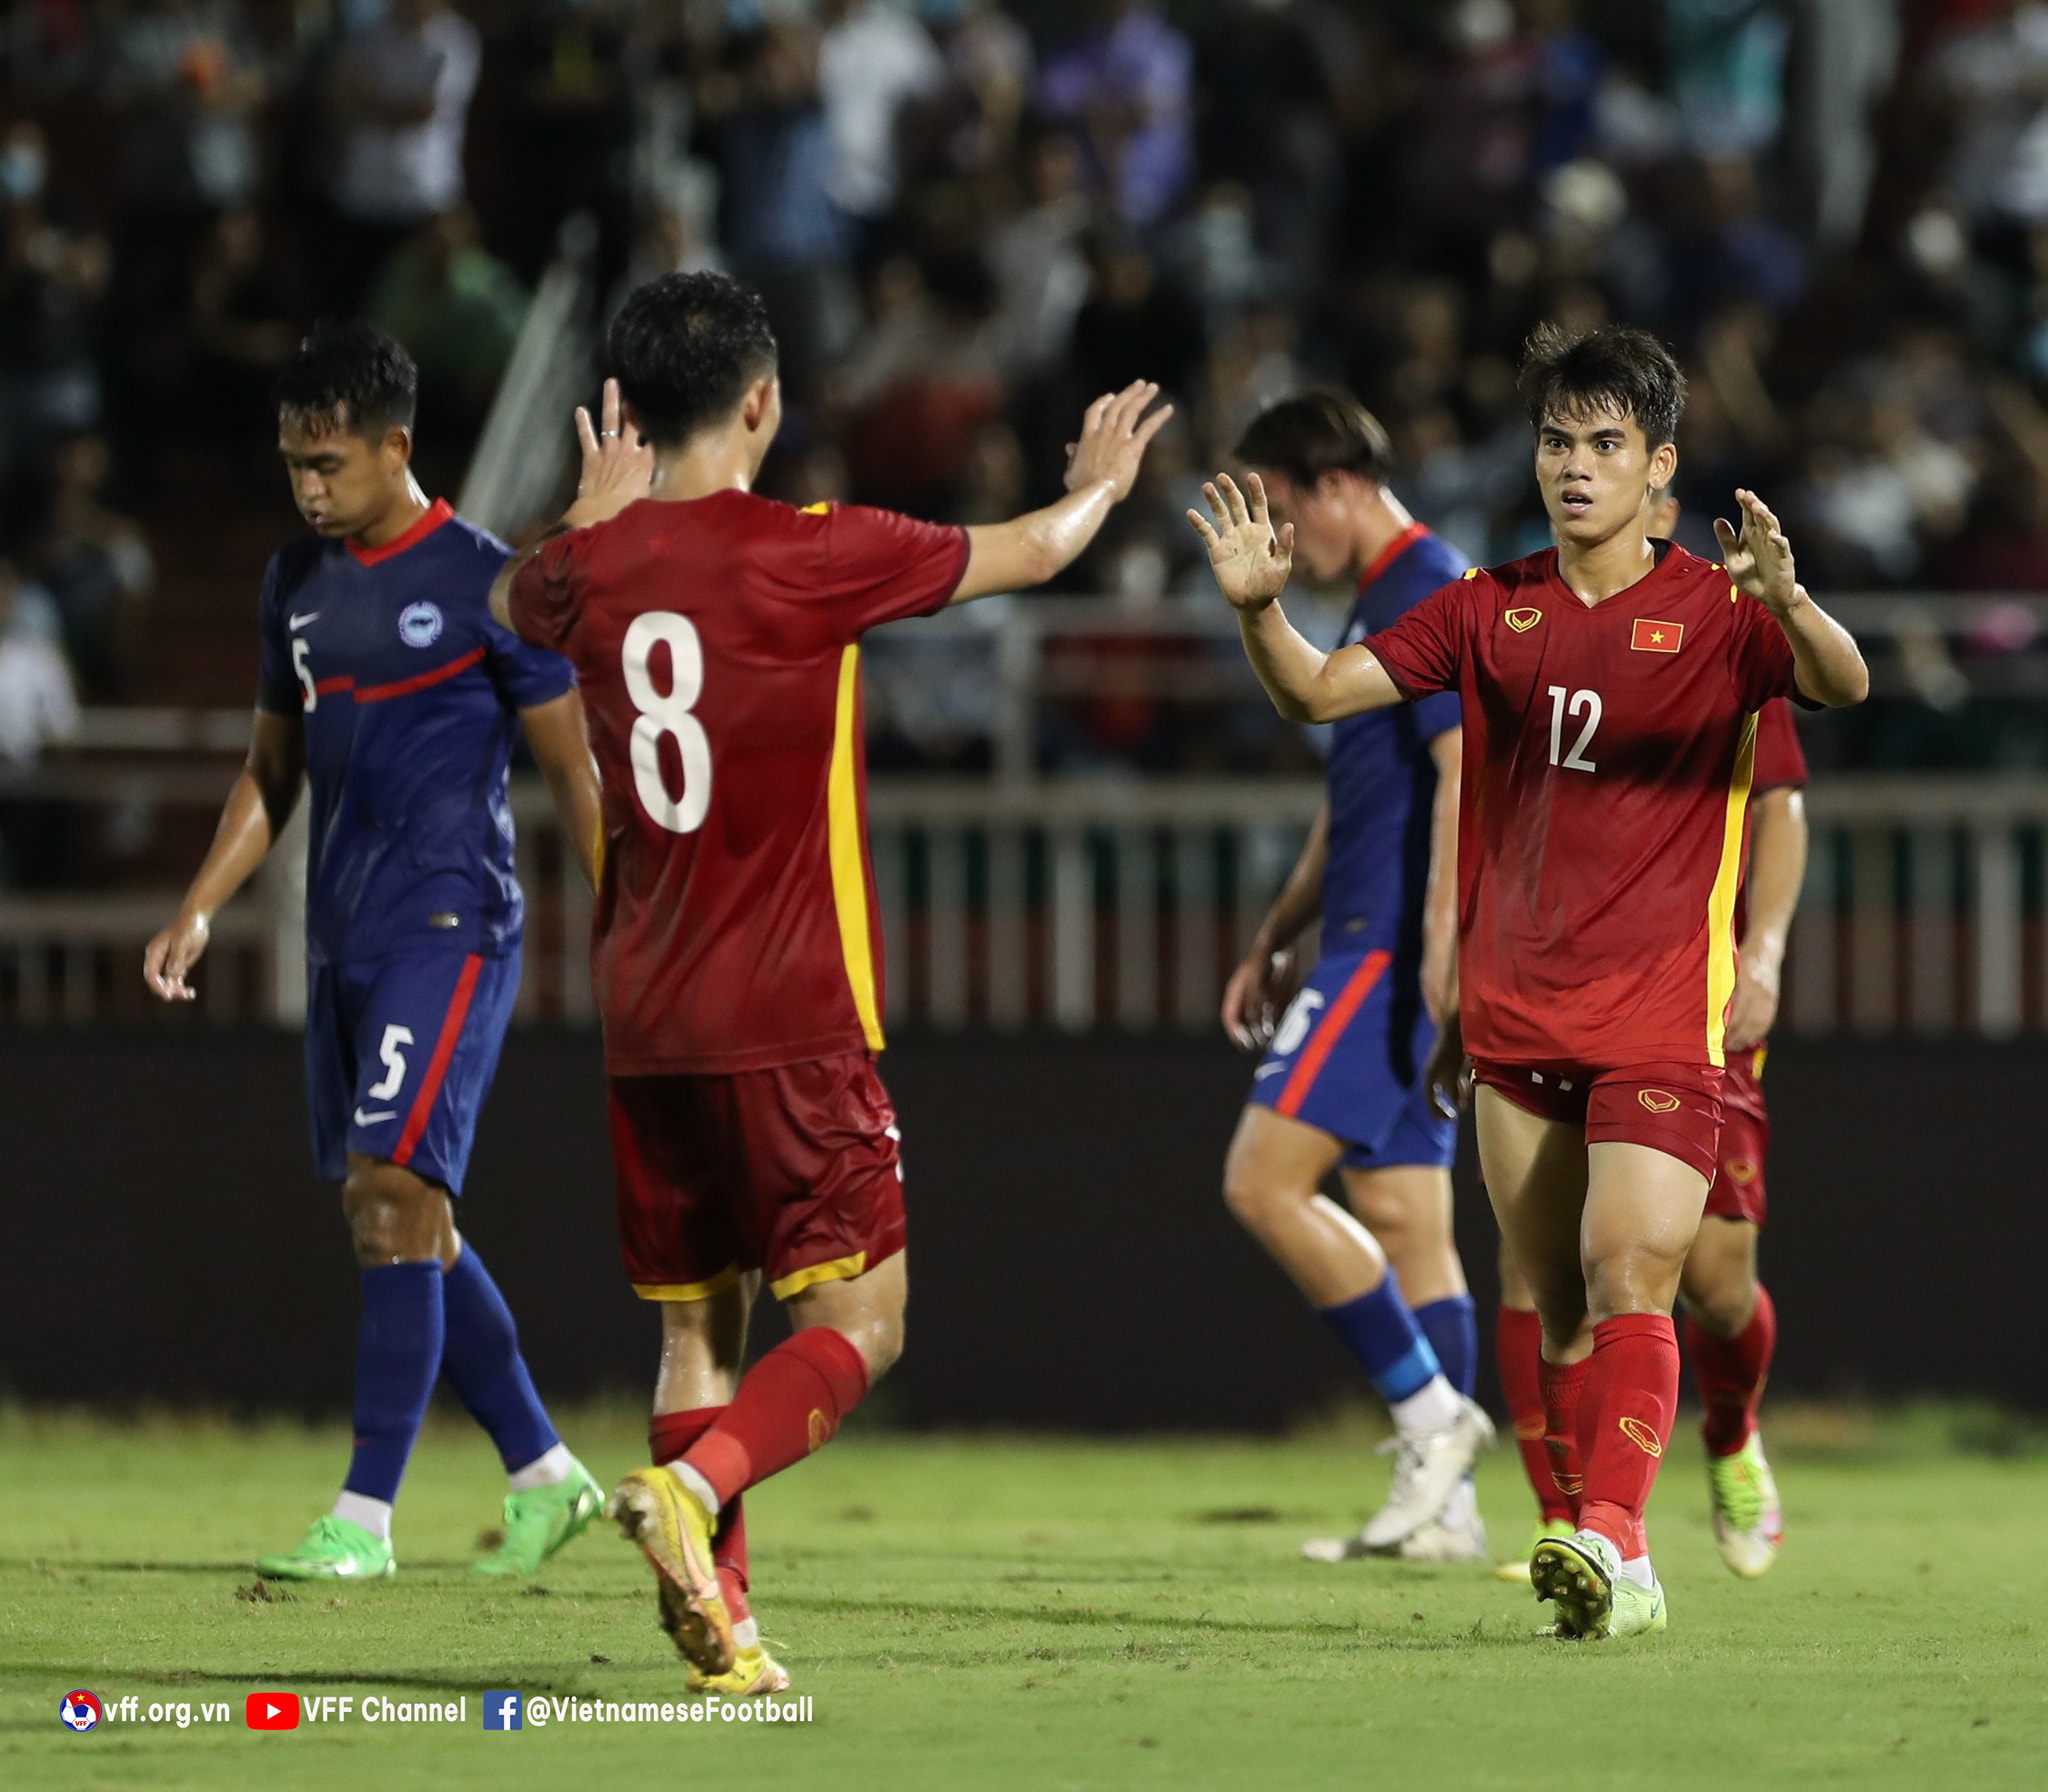 Giao hữu với Singapore, đội tuyển Việt Nam thắng đậm đà 4-0-4